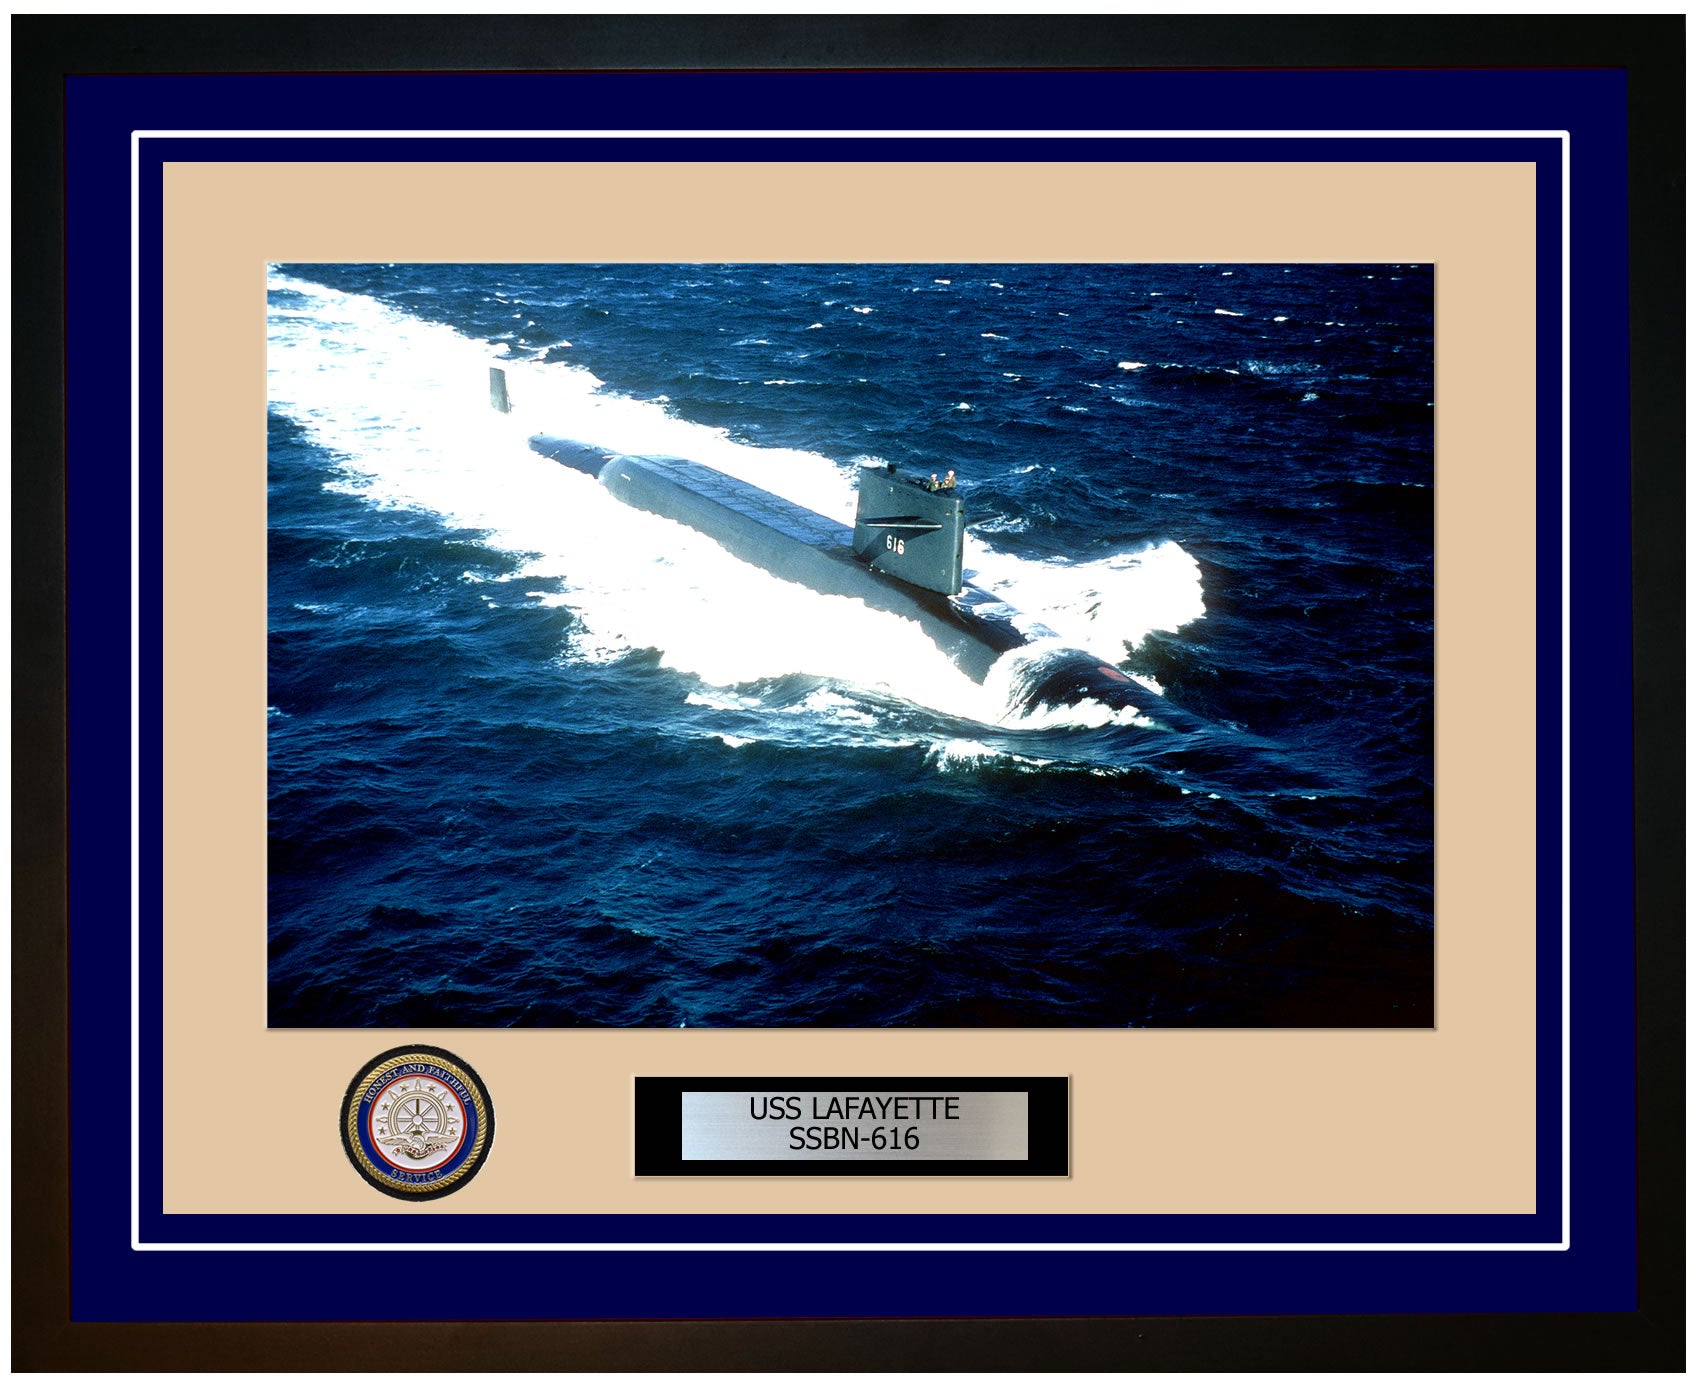 USS Lafayette SSBN-616 Framed Navy Ship Photo Blue